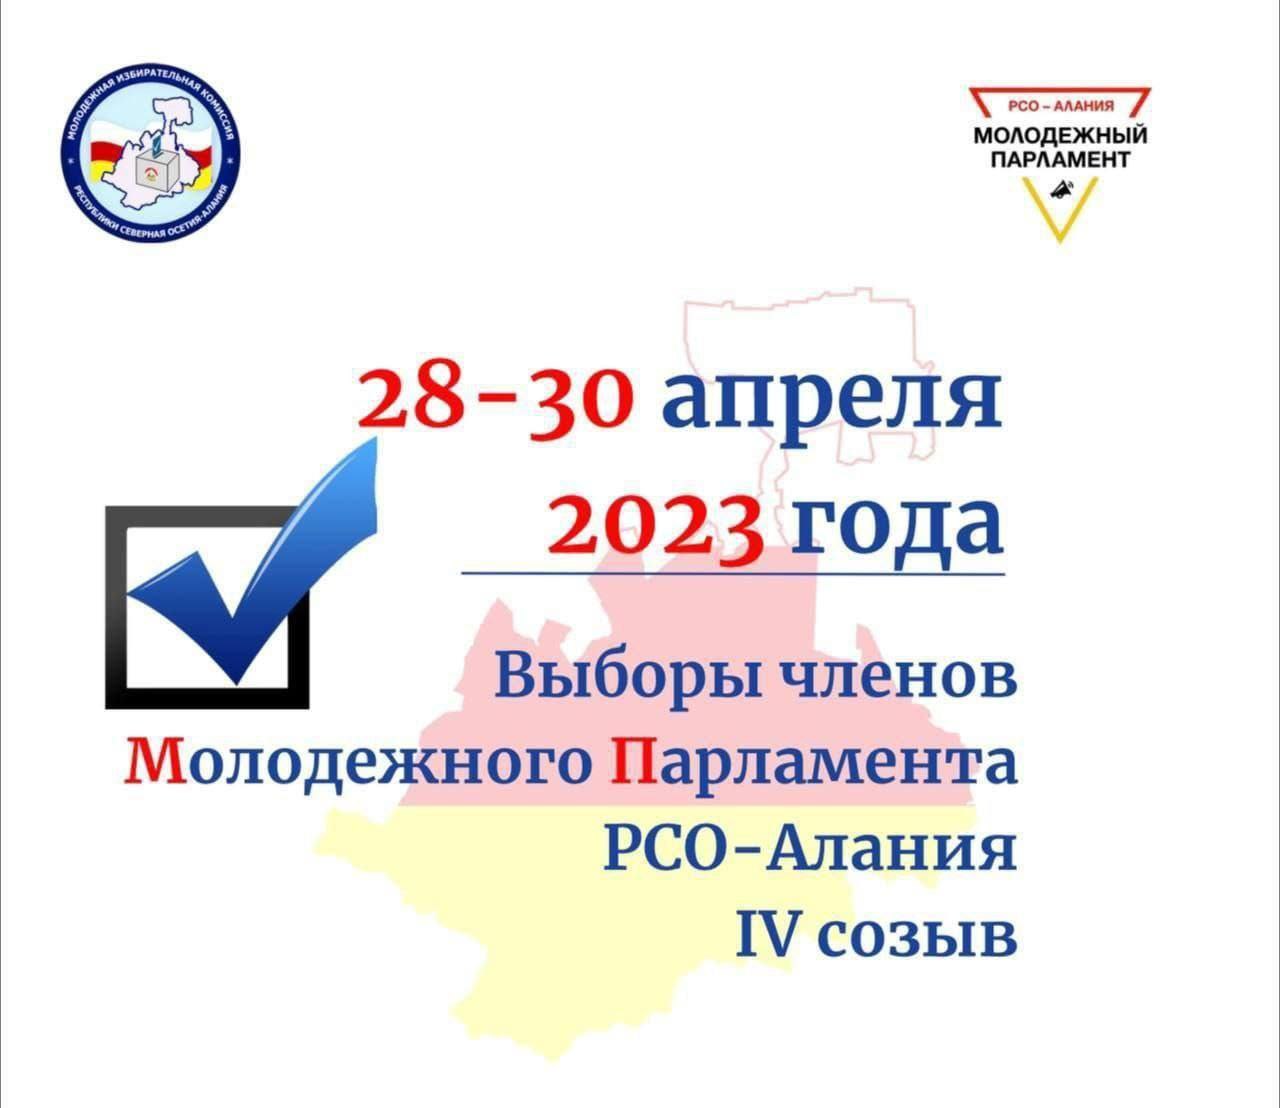 В Северной Осетии стартовали выборы членов молодежного парламента республики 4-го созыва